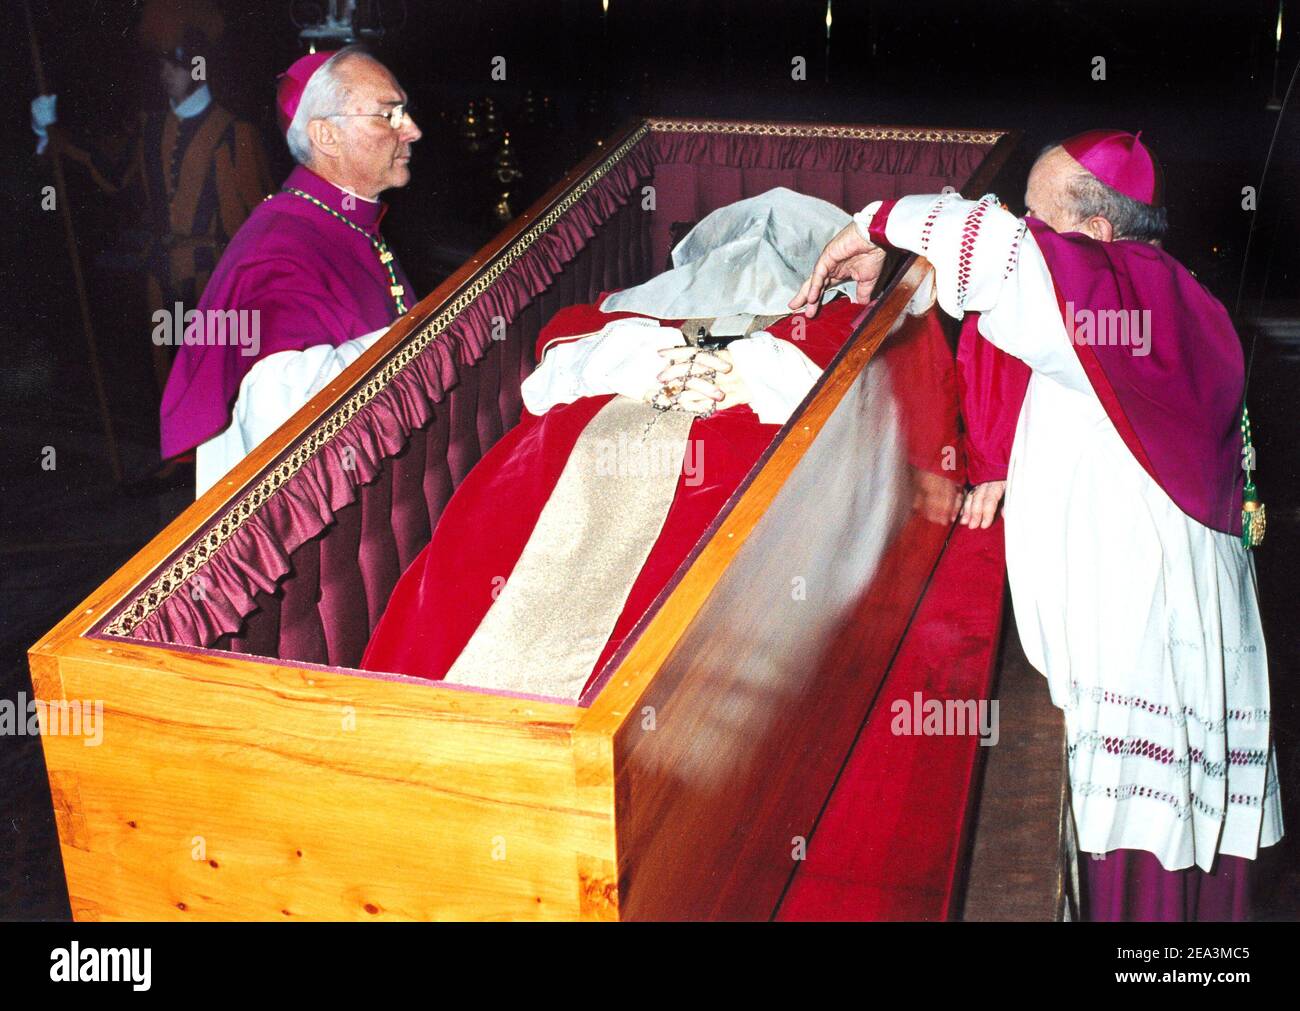 8 APRIL2005. ROME VATICANfunérailles de Jean-Paul II : l'archevêque  Stanislaw Dsiwisz, à droite, place un voile blanc sur le visage du regretté  Pape Jean-Paul II, comme l'observe l'archevêque Piero Marini, avant de